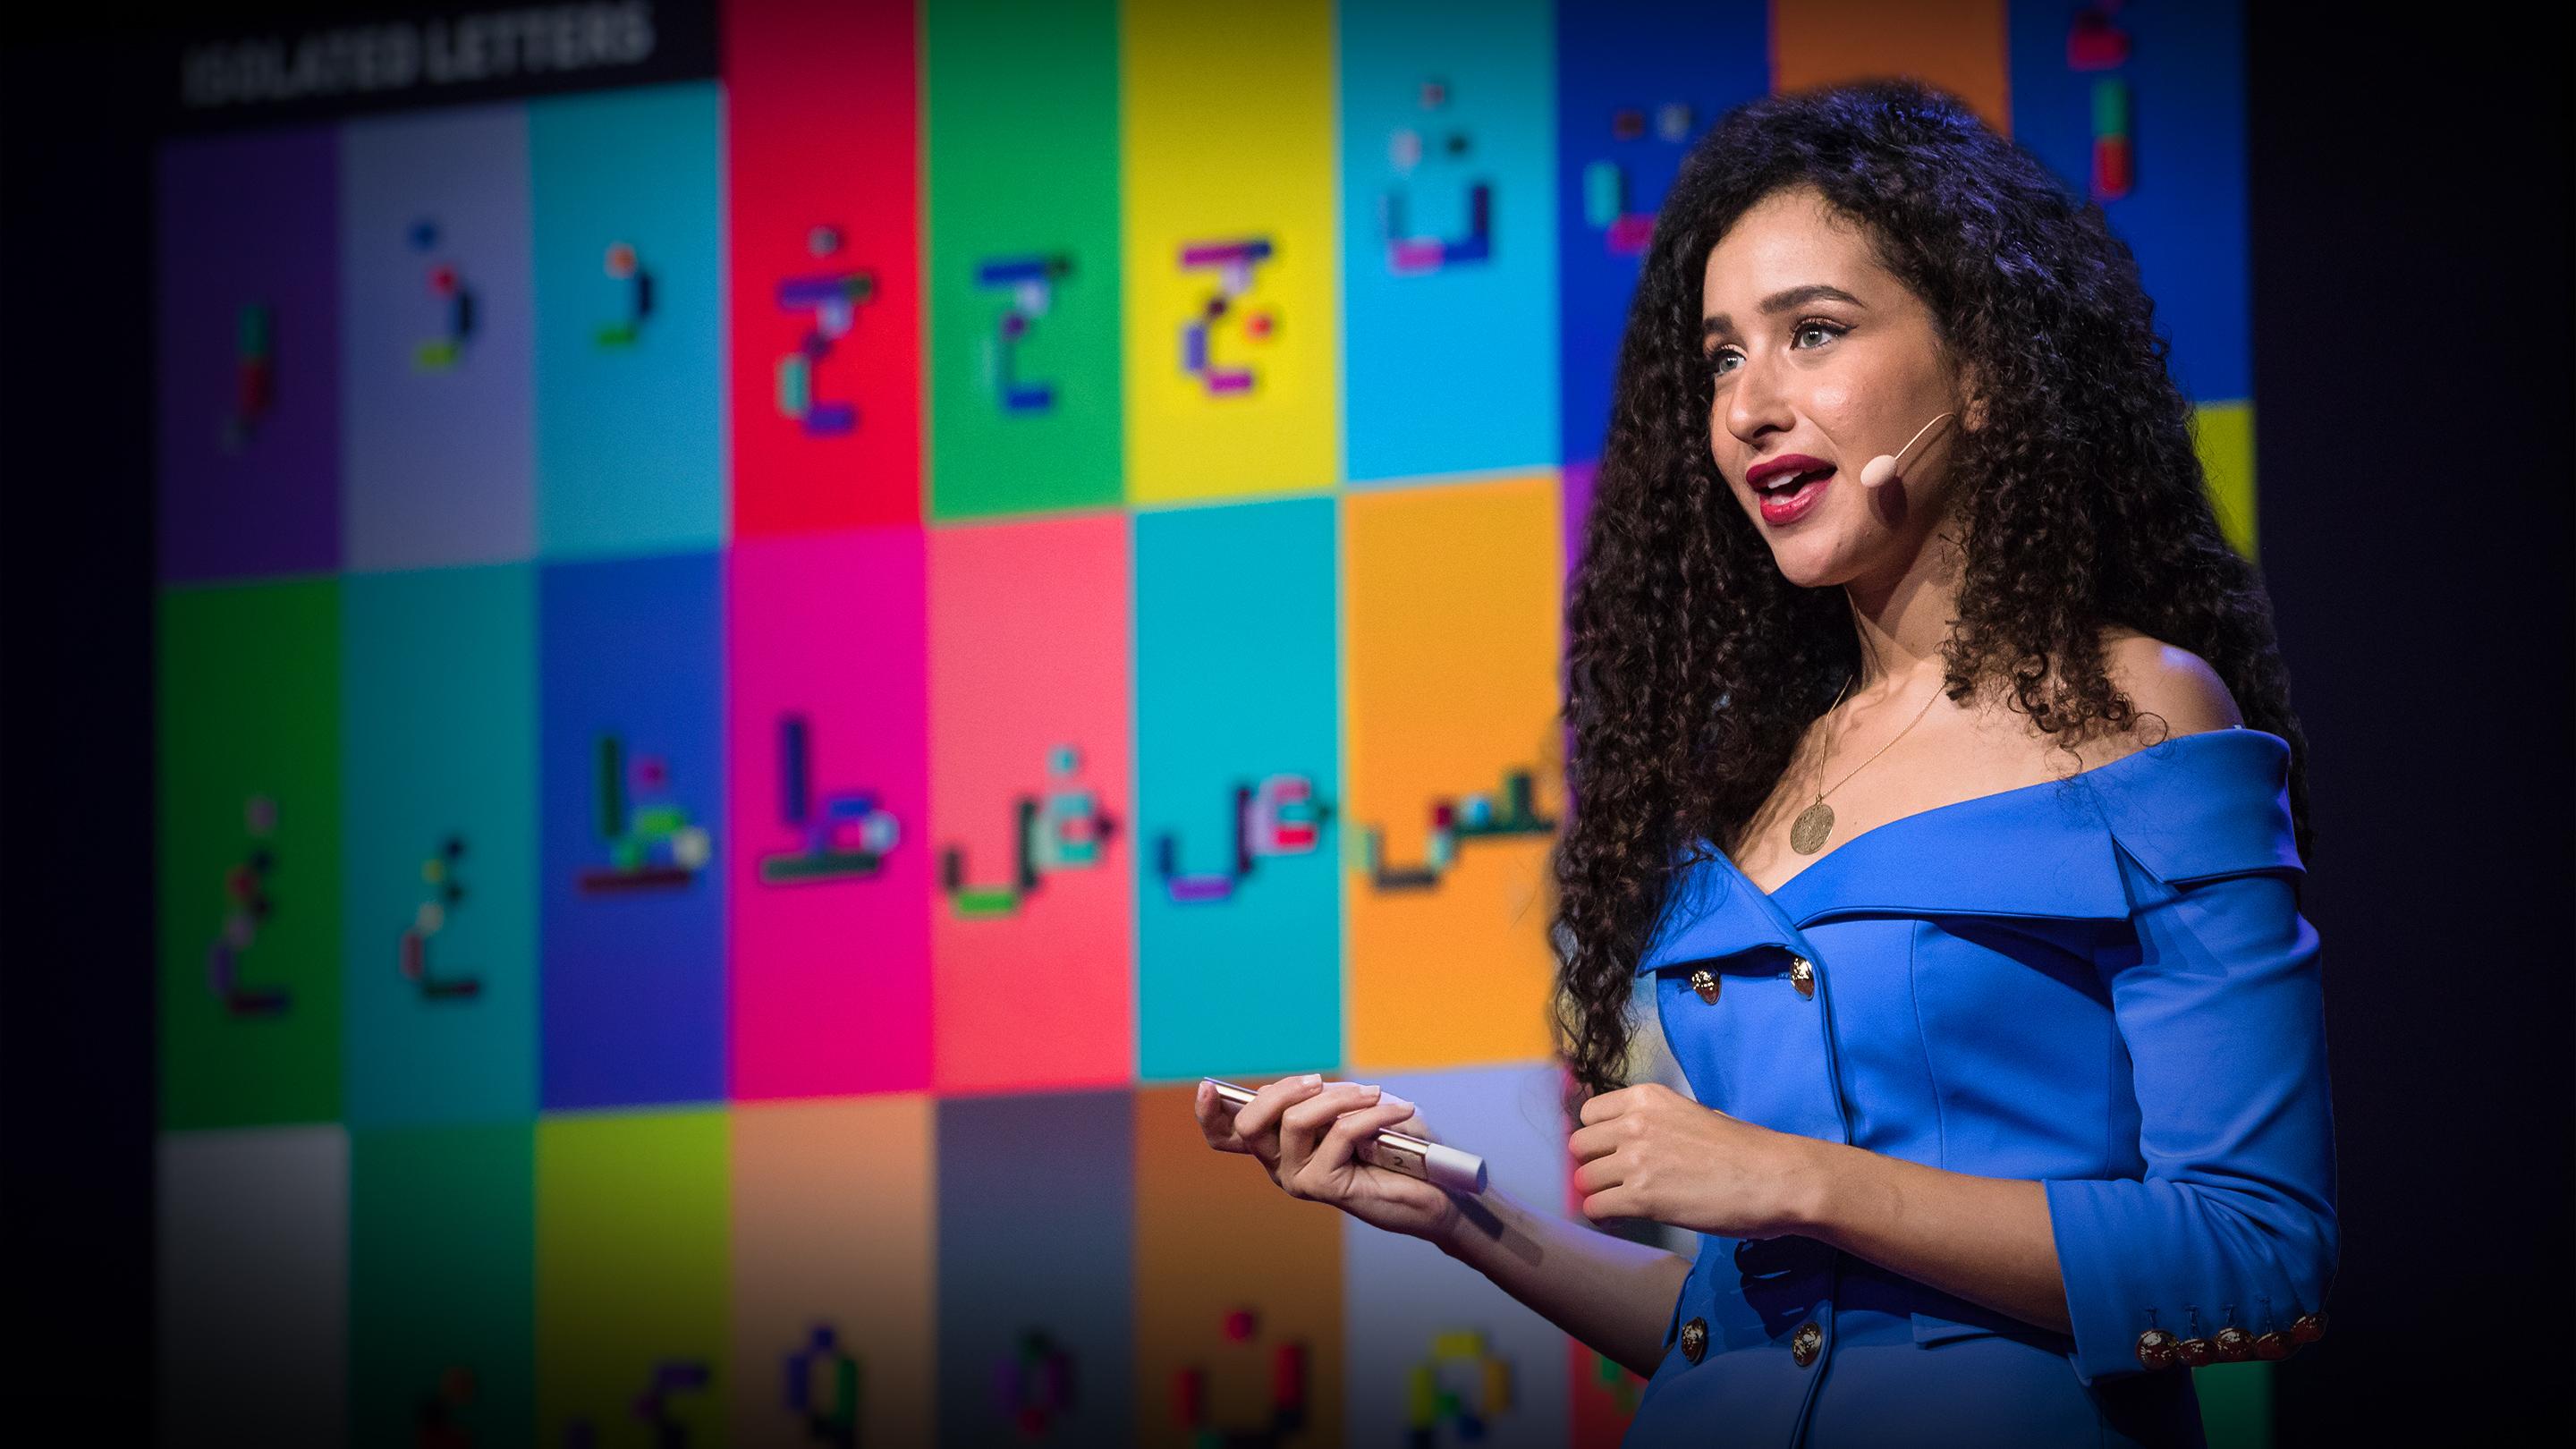 Comment j'utilise les LEGO pour enseigner l'arabe | Ghada Wali